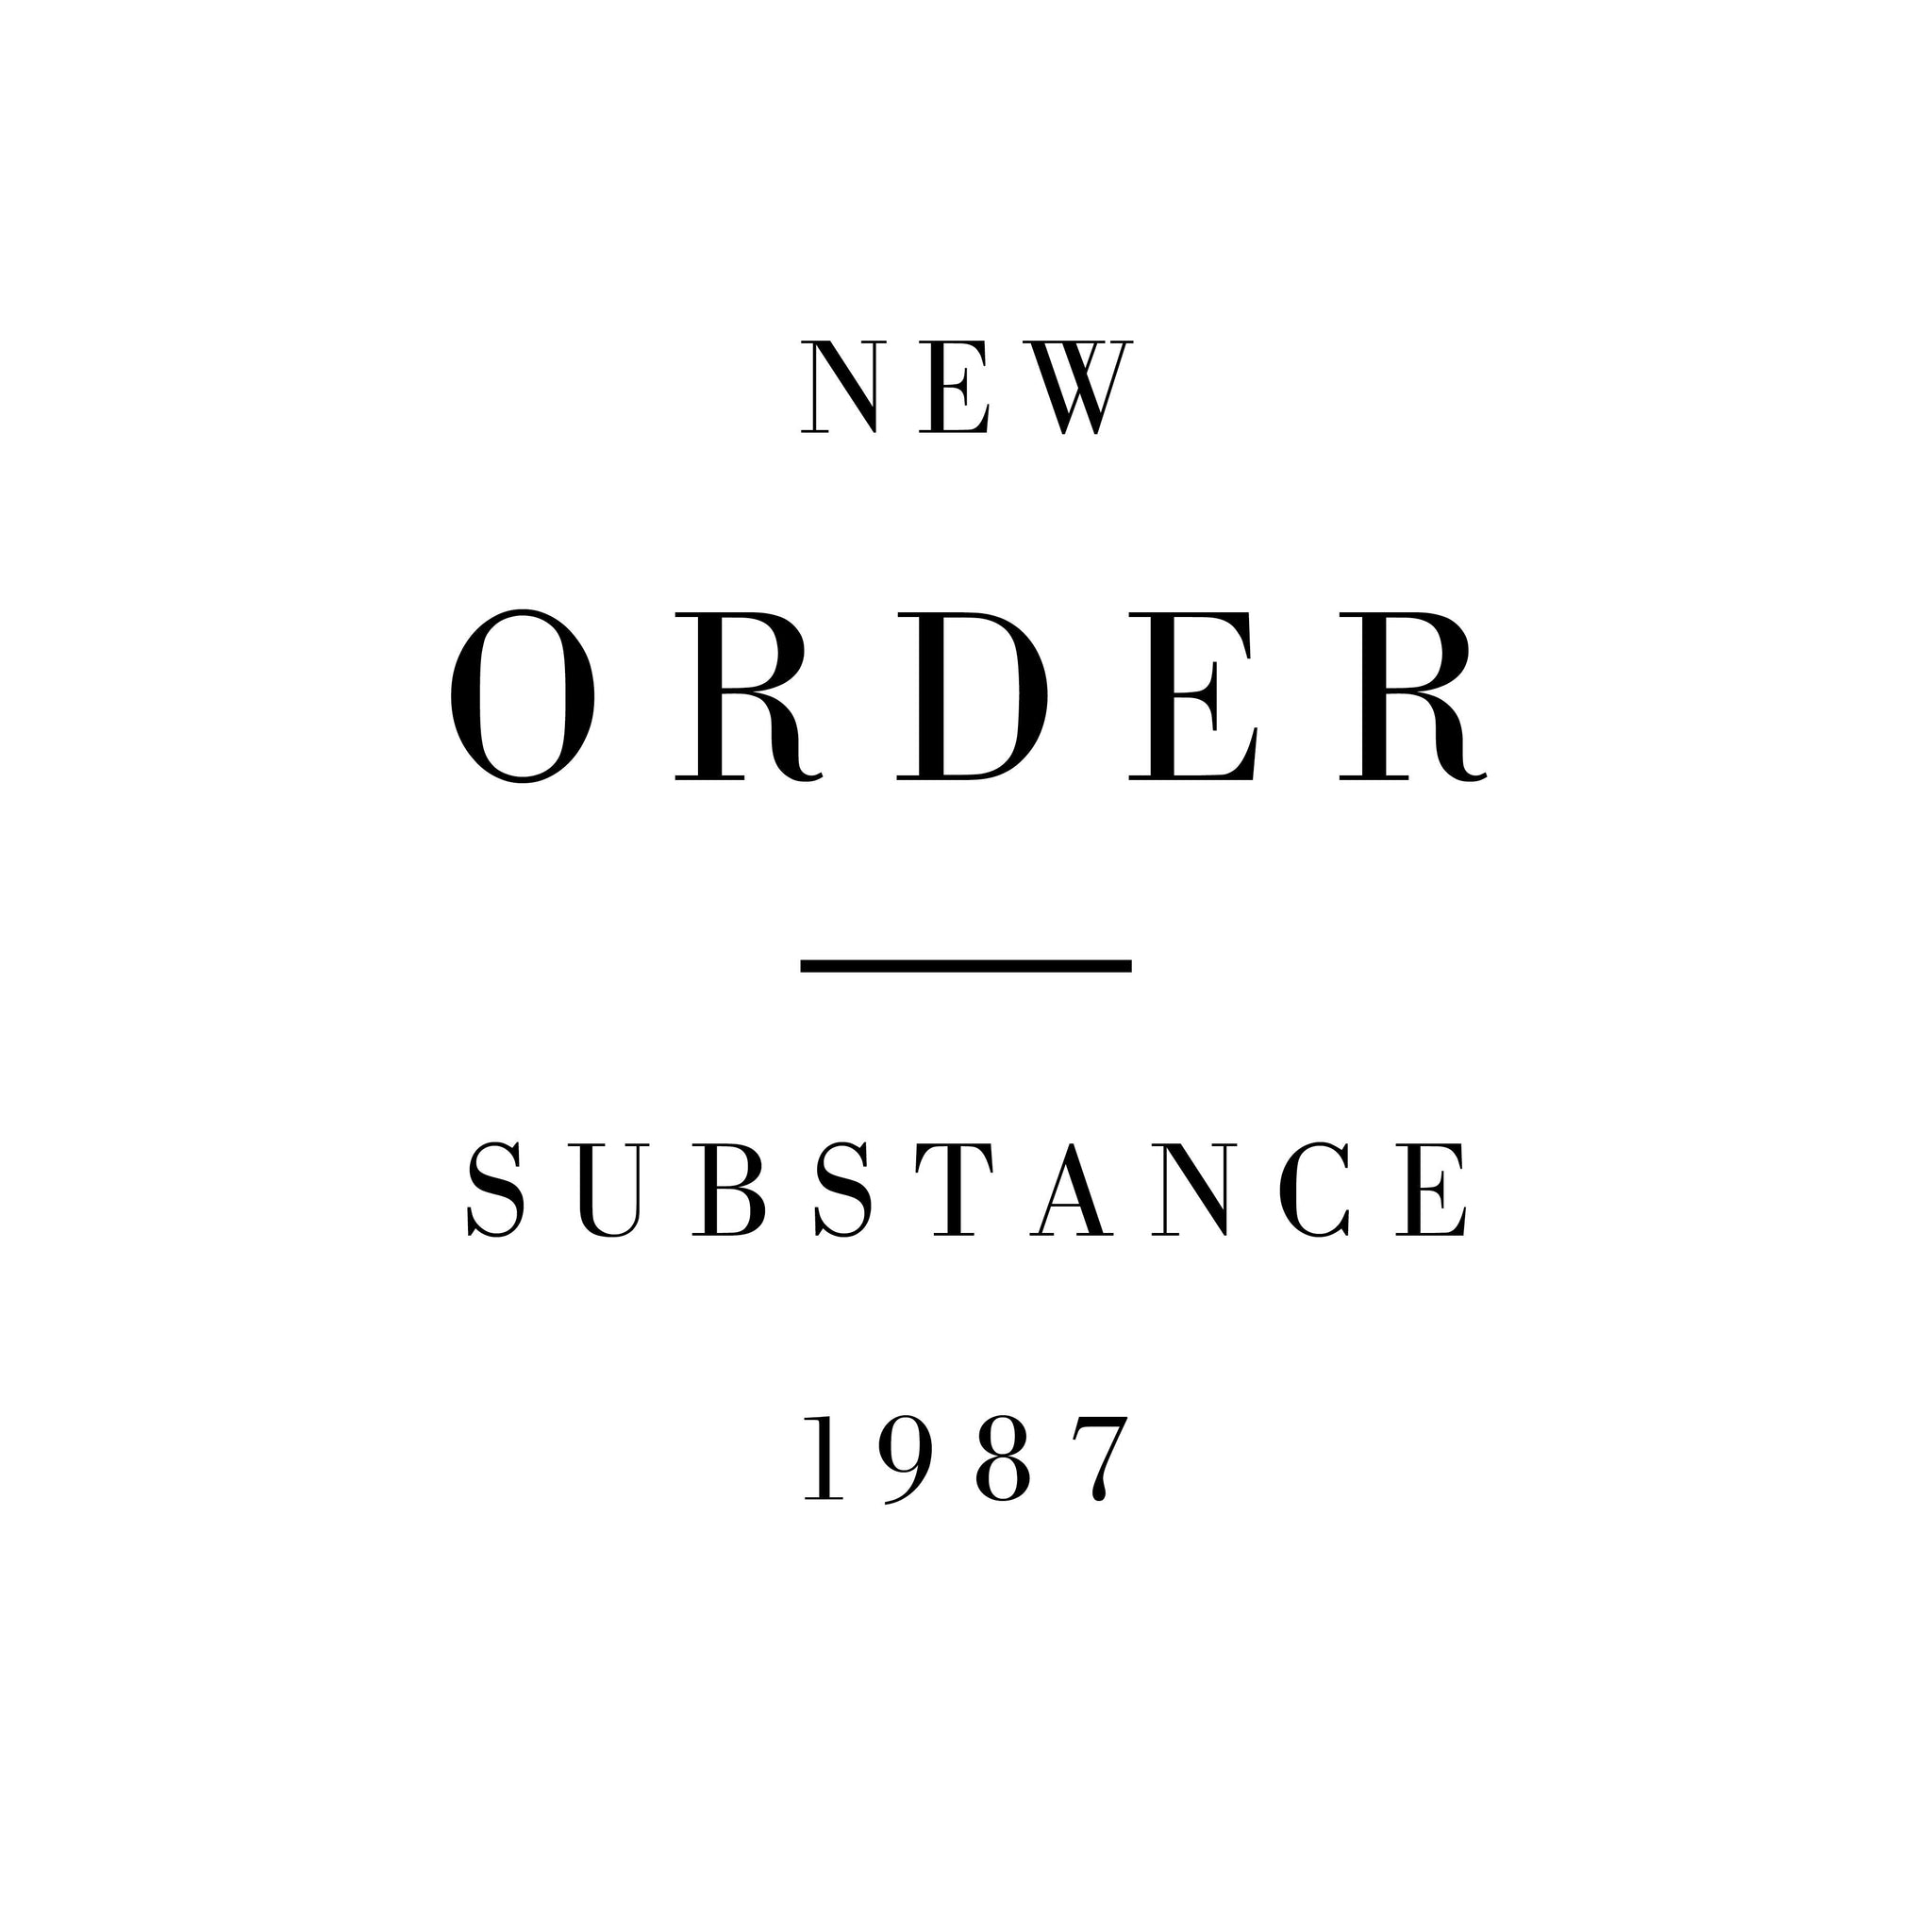 NEW ORDER - Substance '87 (Remastered) - 2LP - Red & Blue Vinyl [NOV 10]